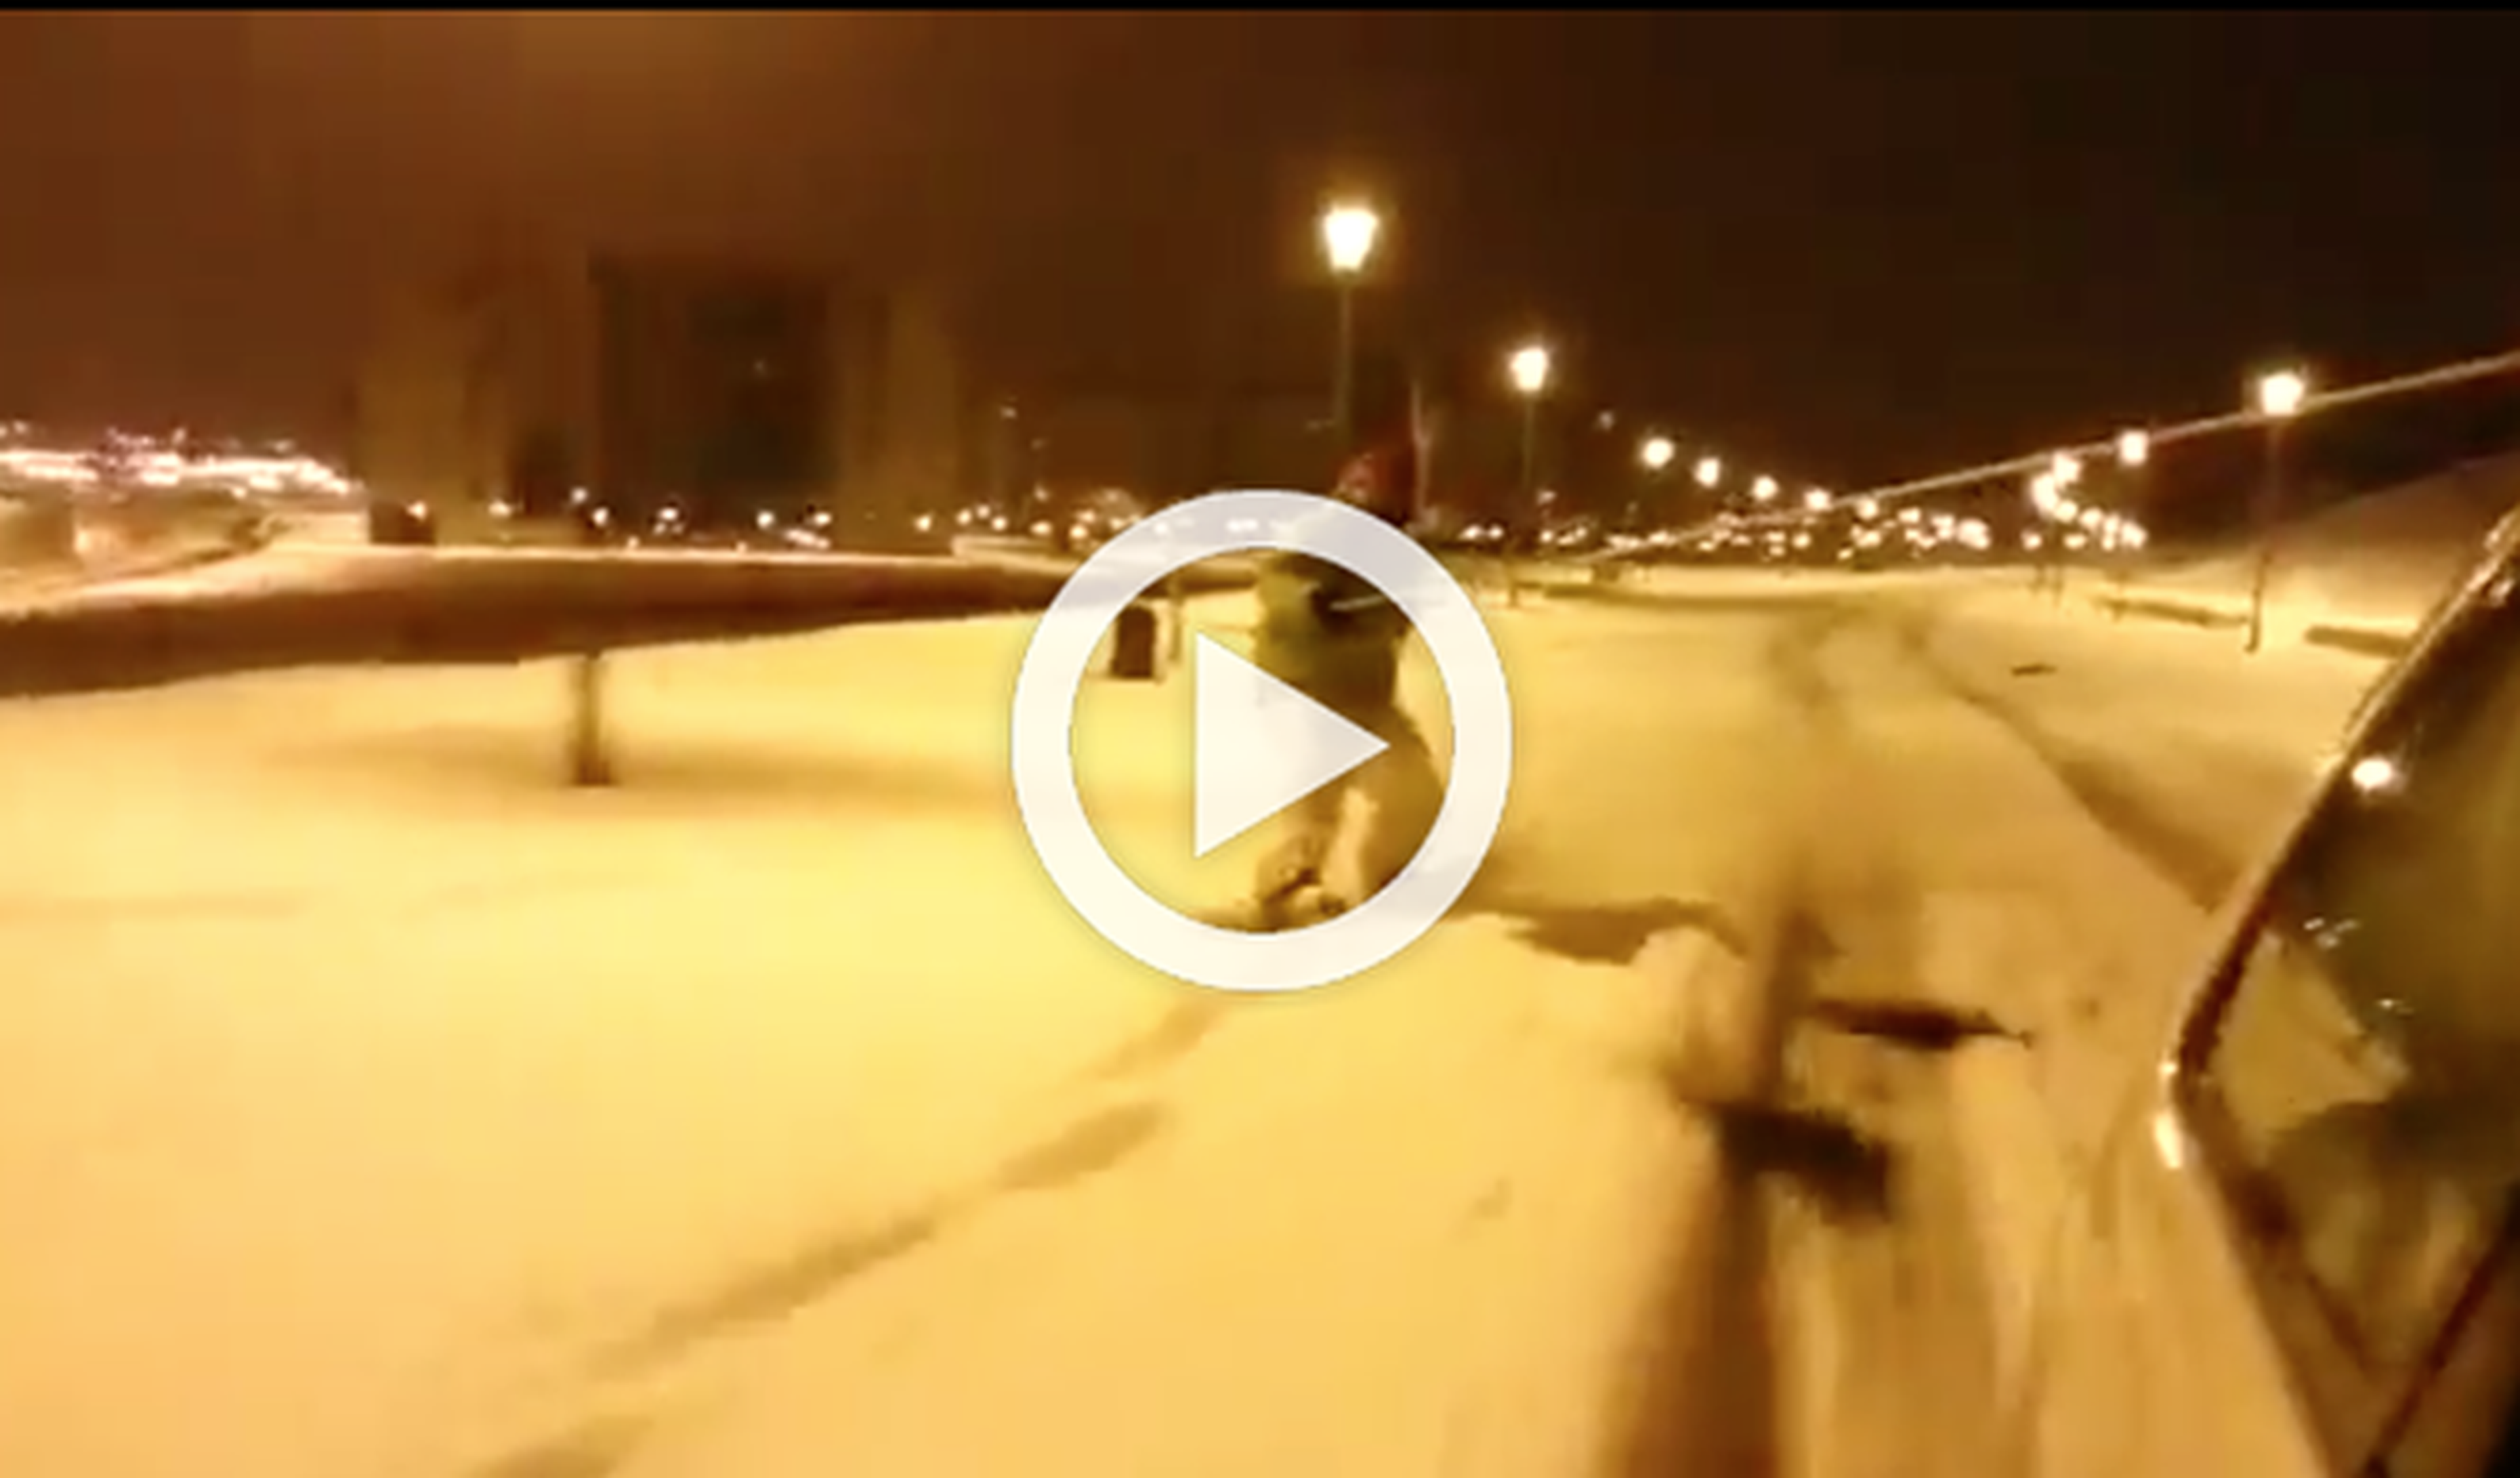 Vídeo: hace snow arrastrado por un coche en Vitoria